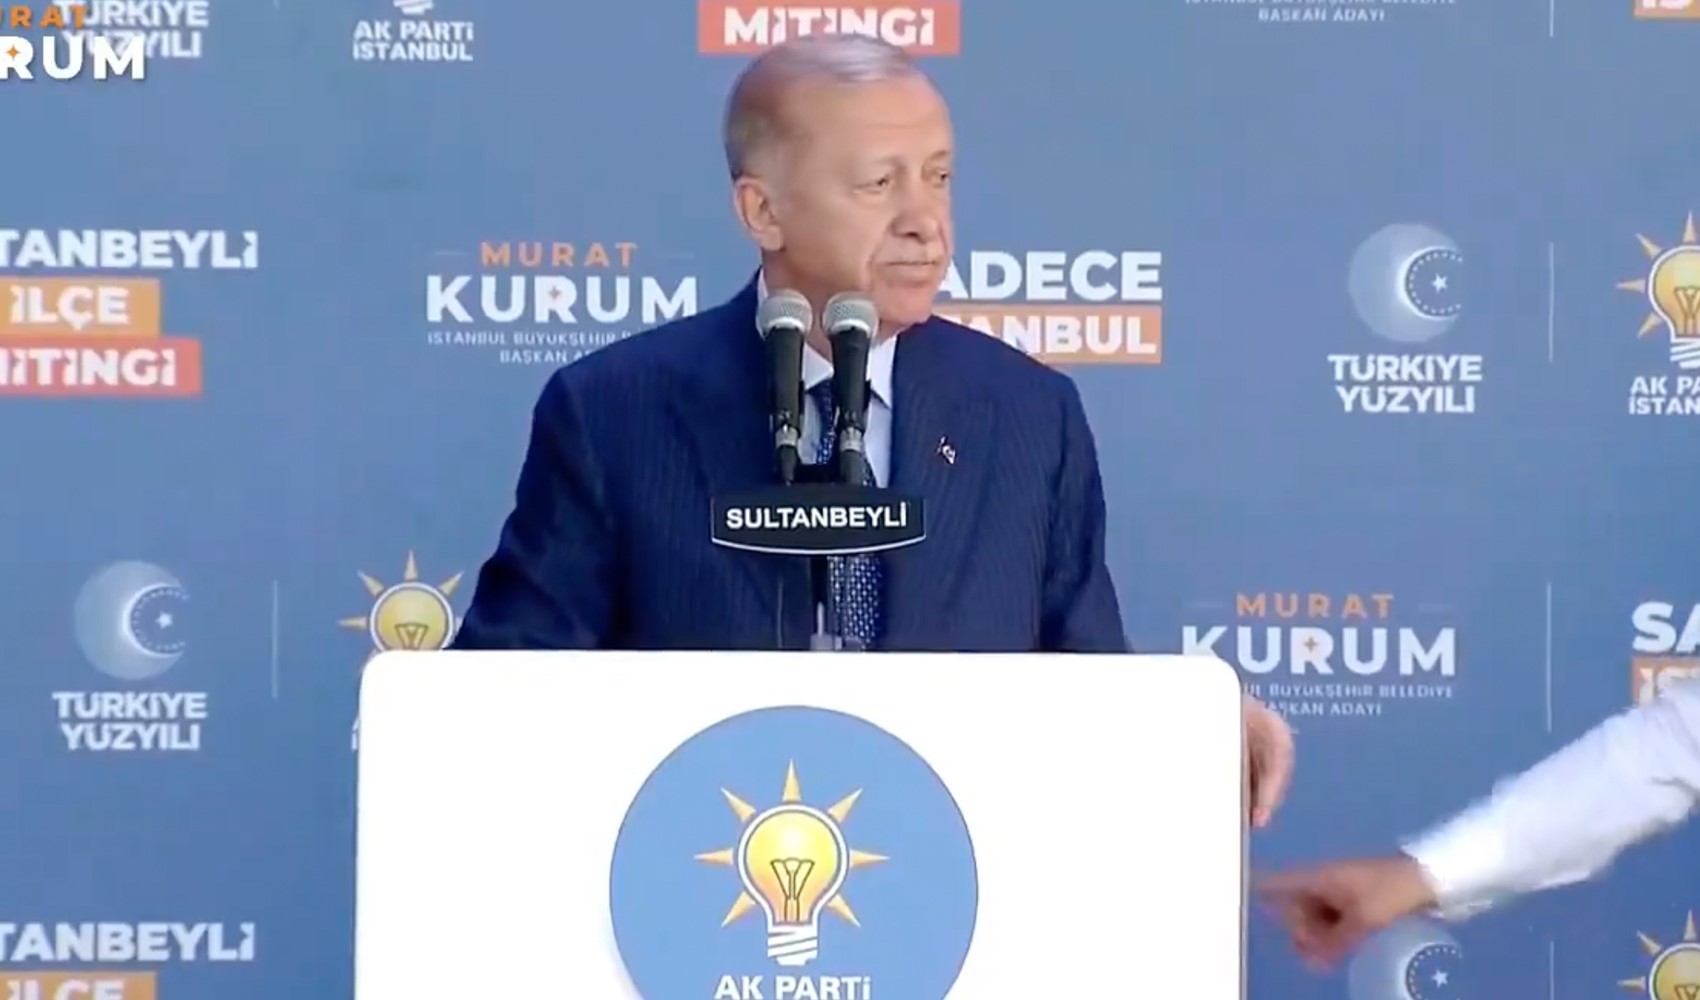 Cumhurbaşkanı Erdoğan 00:30'da konuşma yapacak